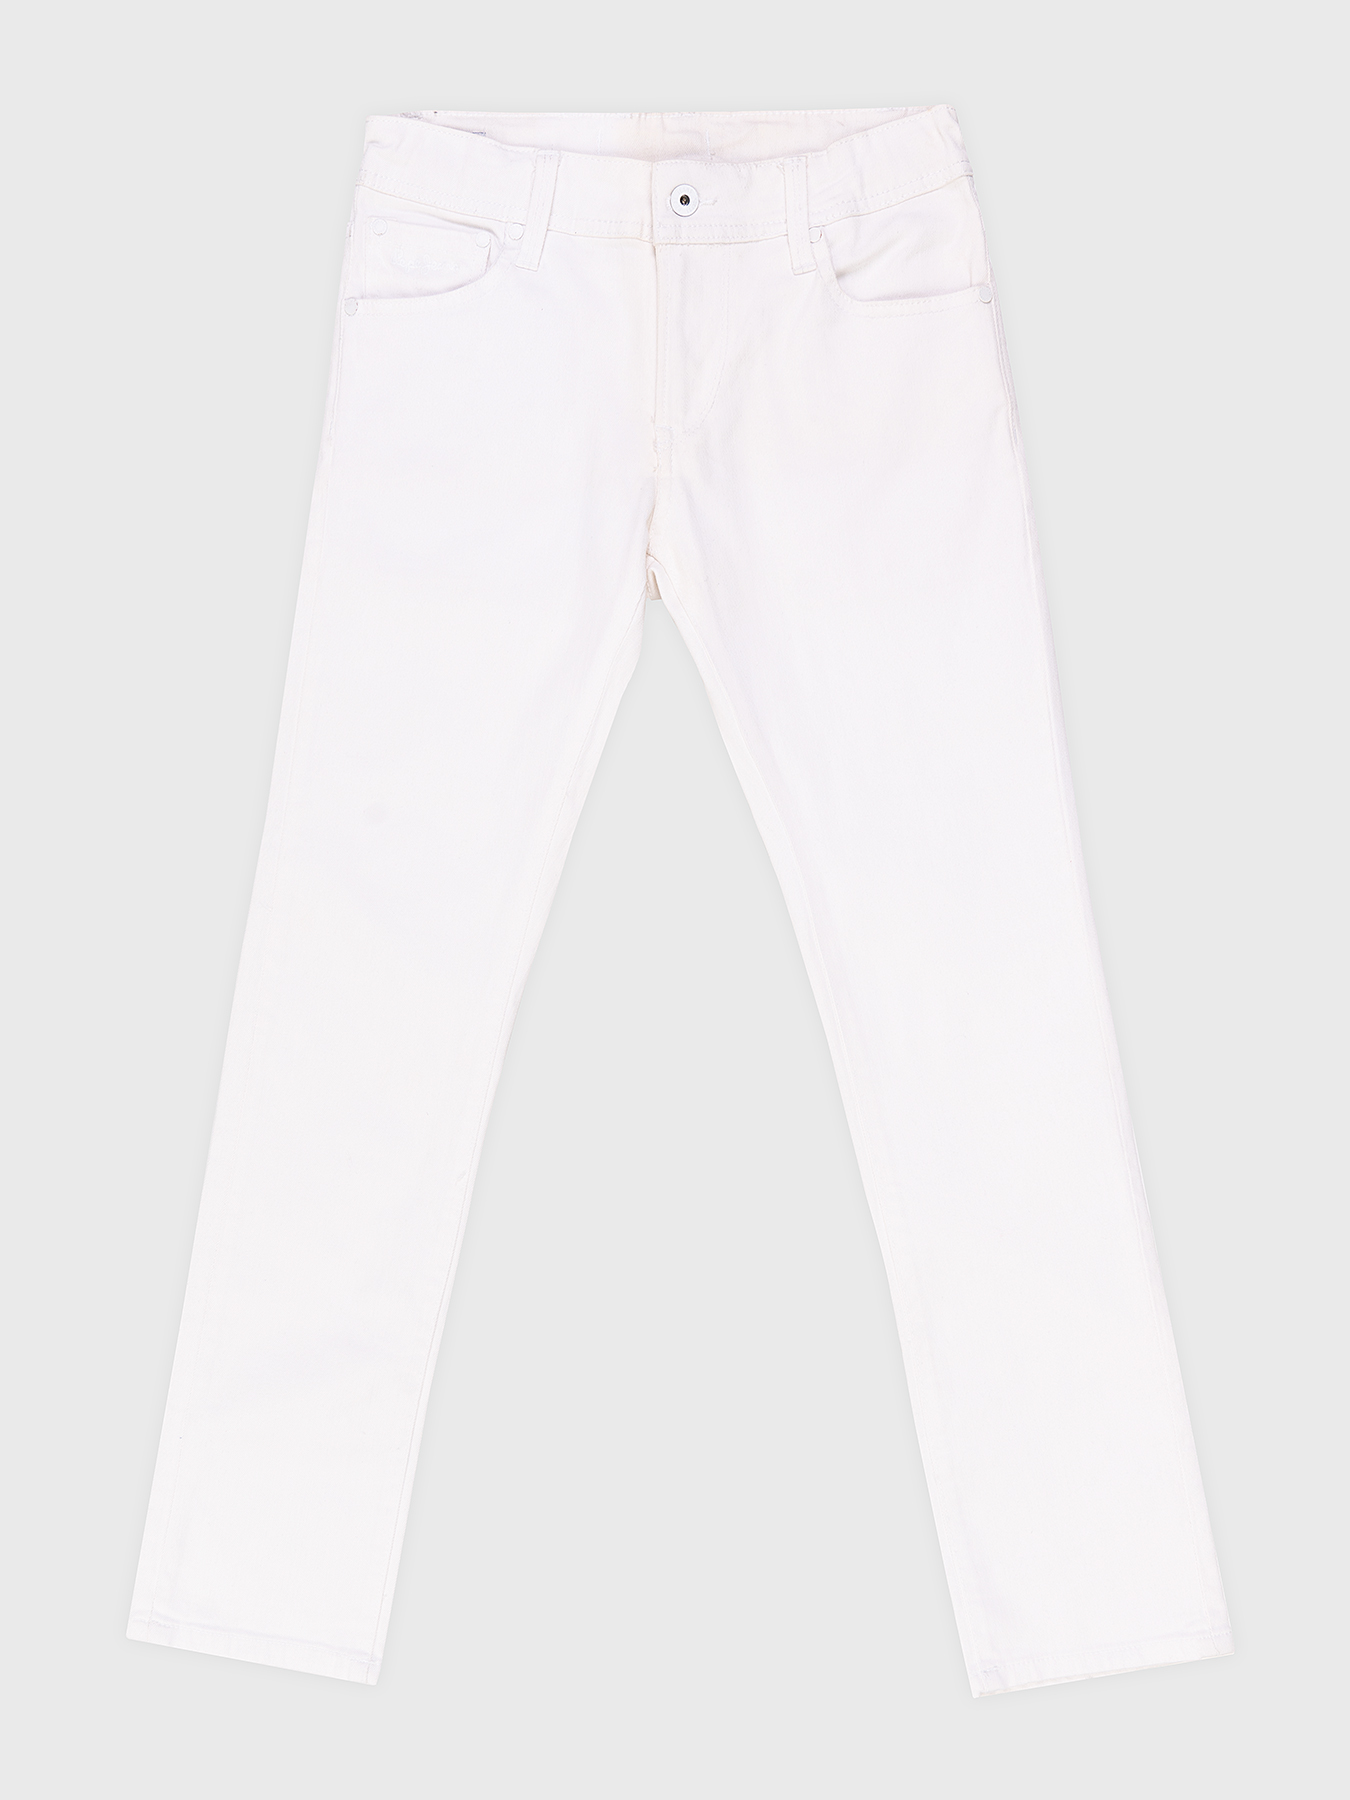 Бели дънки на марката Pepe Jeans — Globalbrandsstore.com